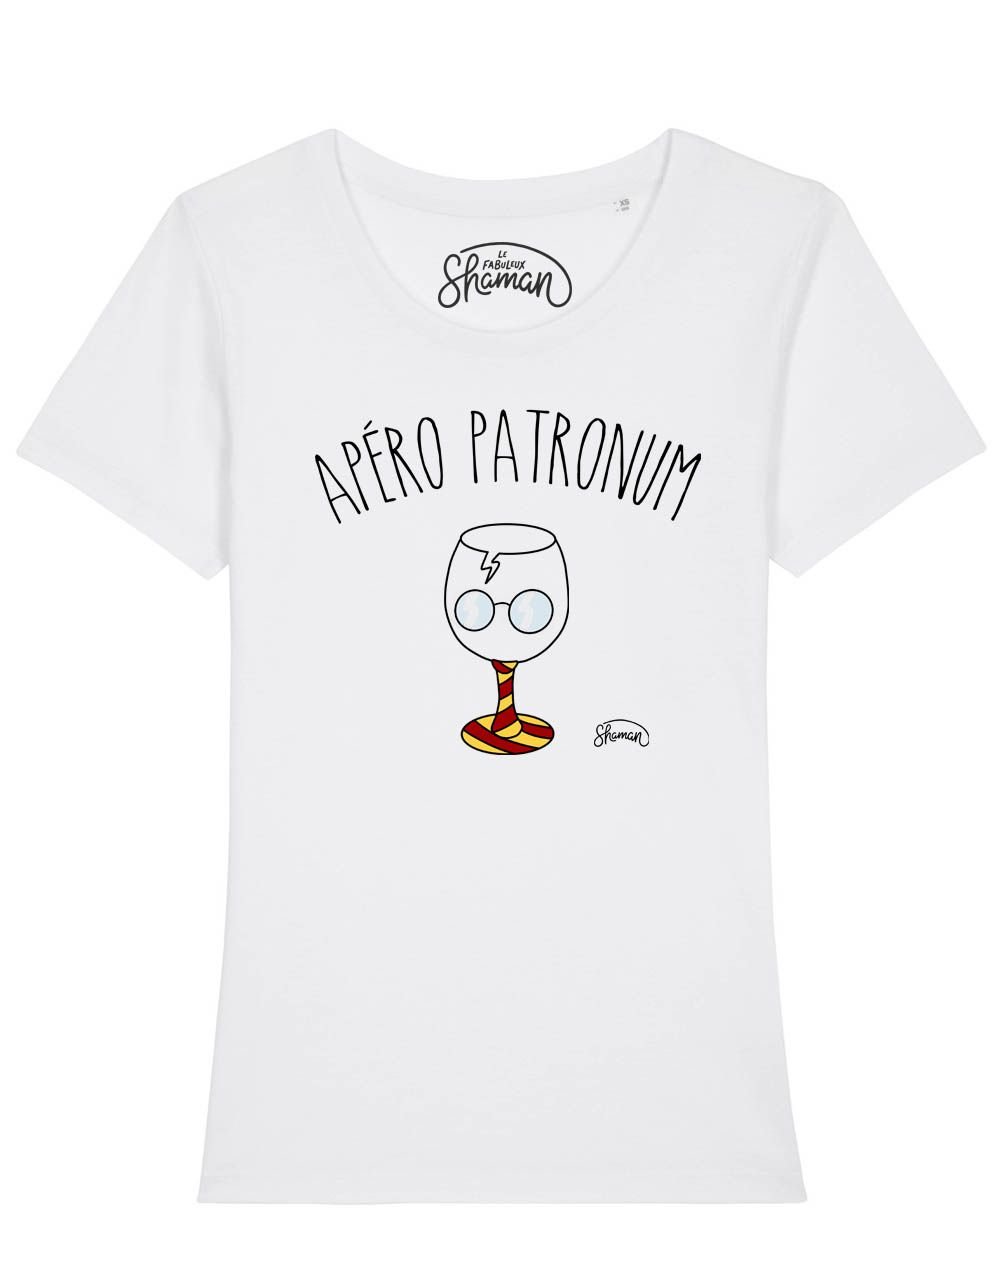 T-shirt Apero Patronum